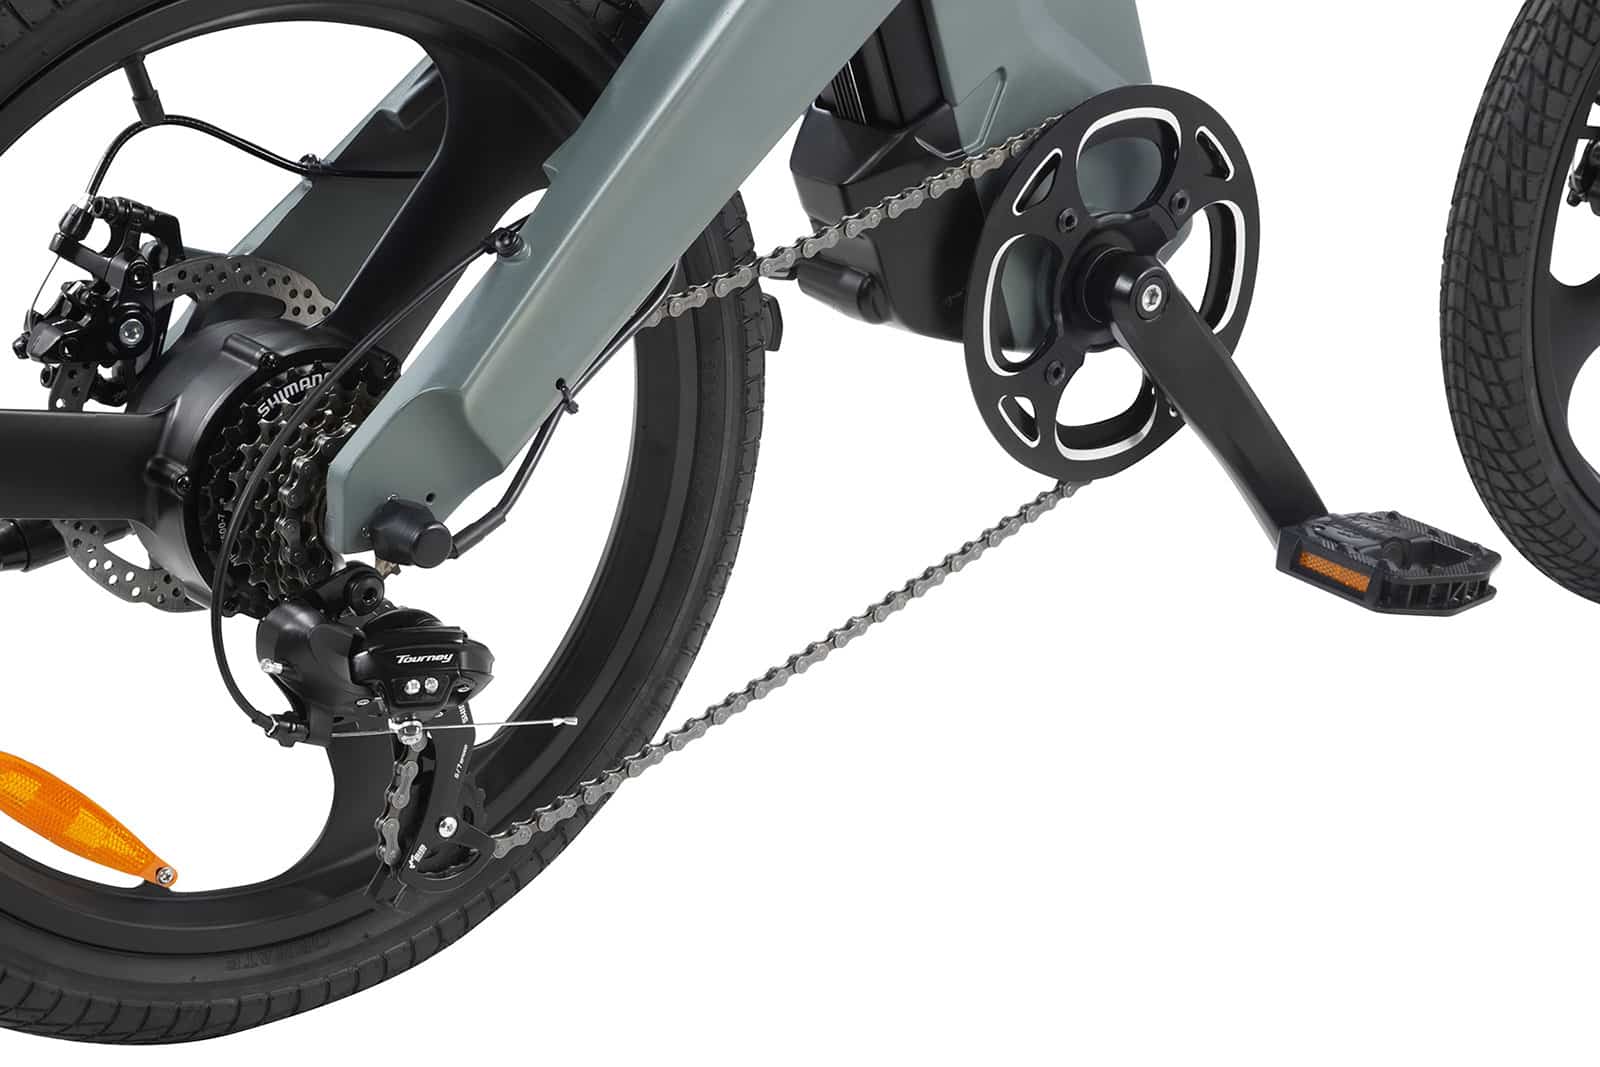 DYU T1 ηλεκτρικό ποδήλατο, DYU T1: Το ιδανικό ηλεκτρικό ποδήλατο για κάθε τρόπο ζωής